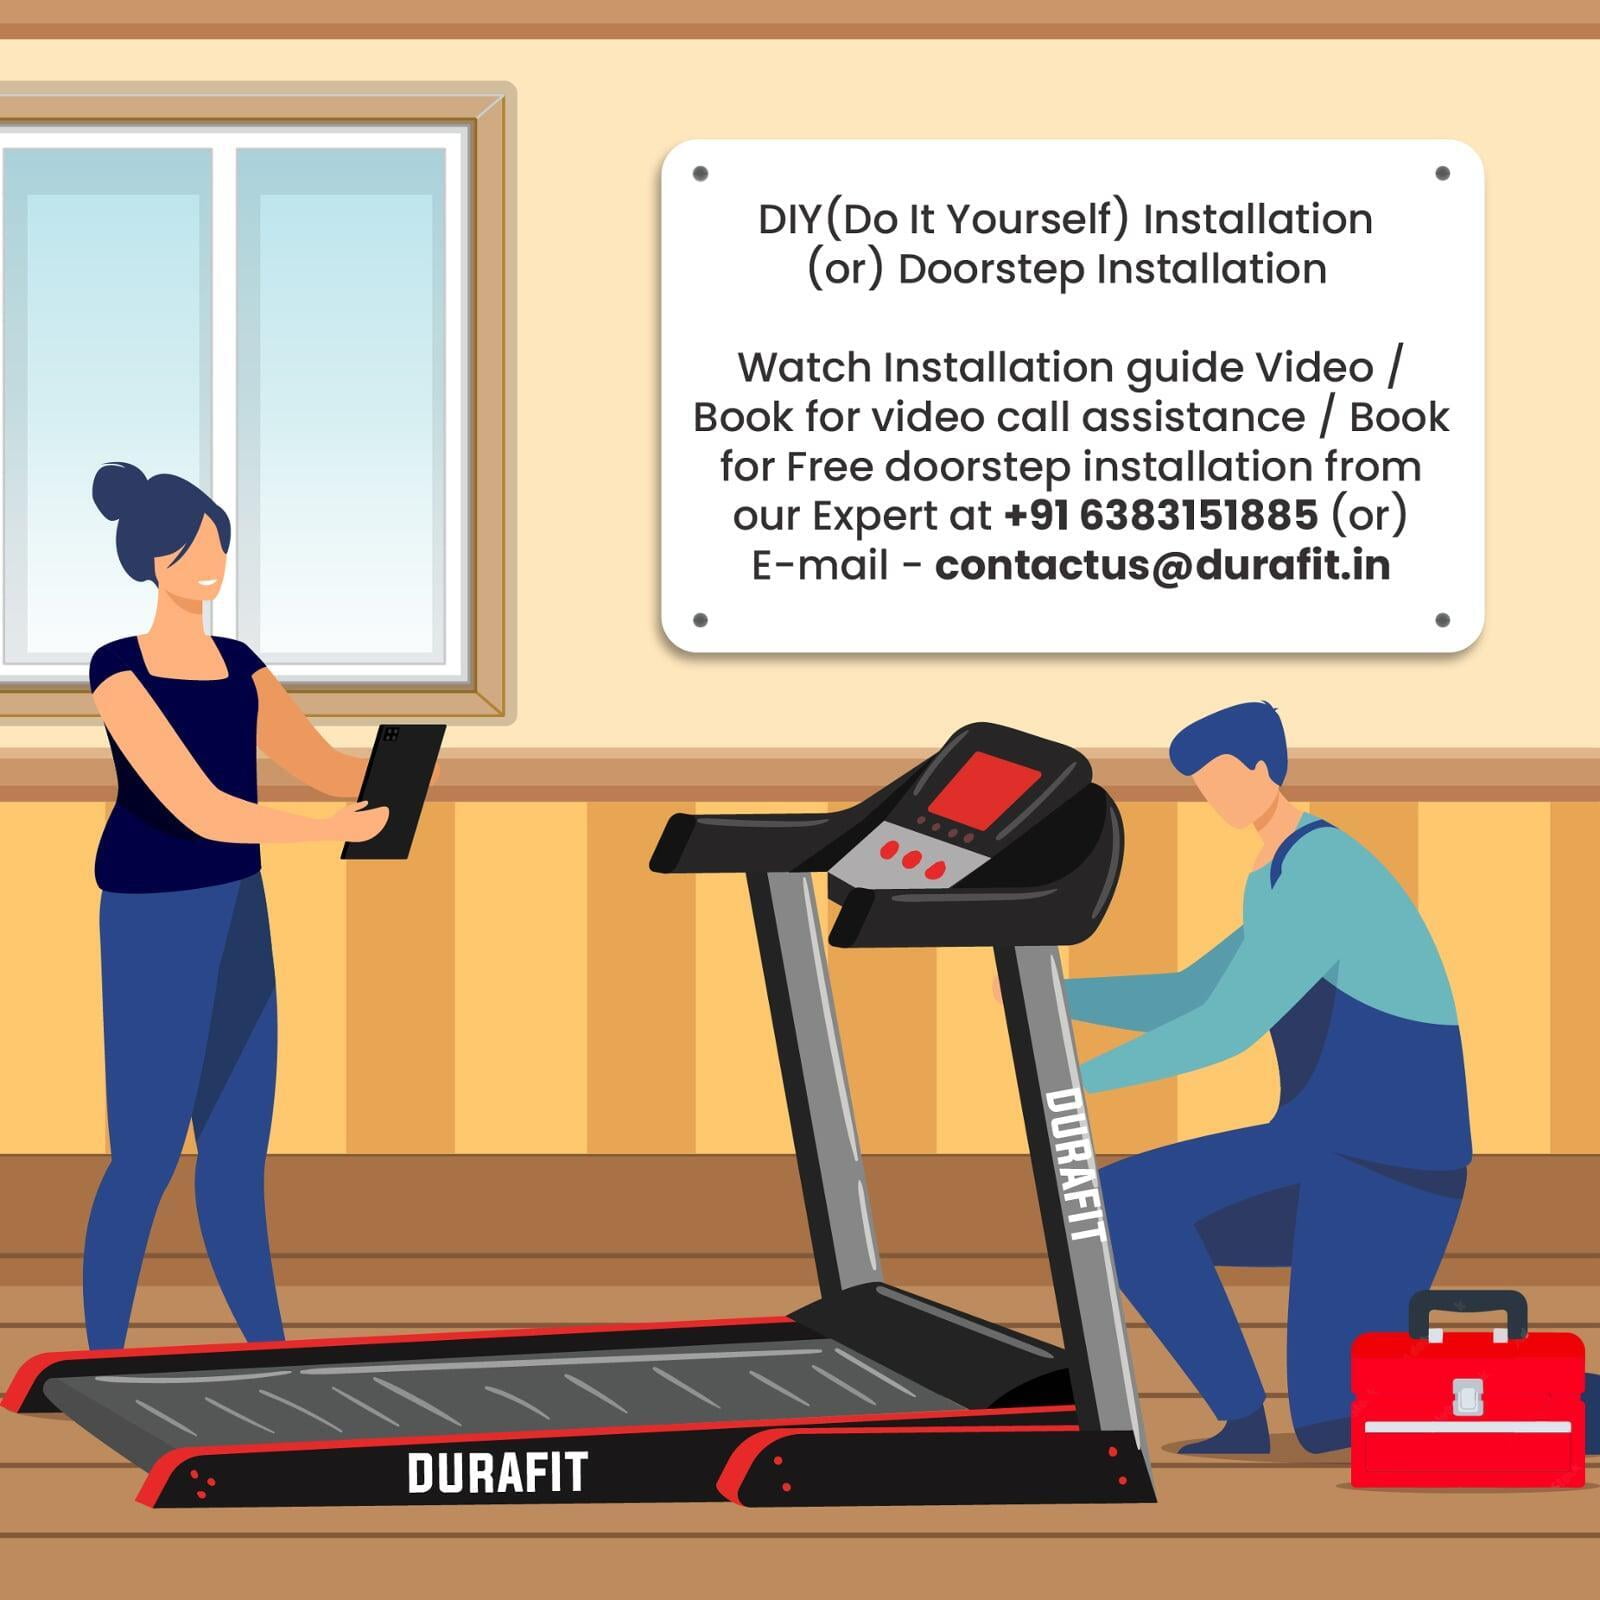 Durafit Ranger Multifunction Treadmill